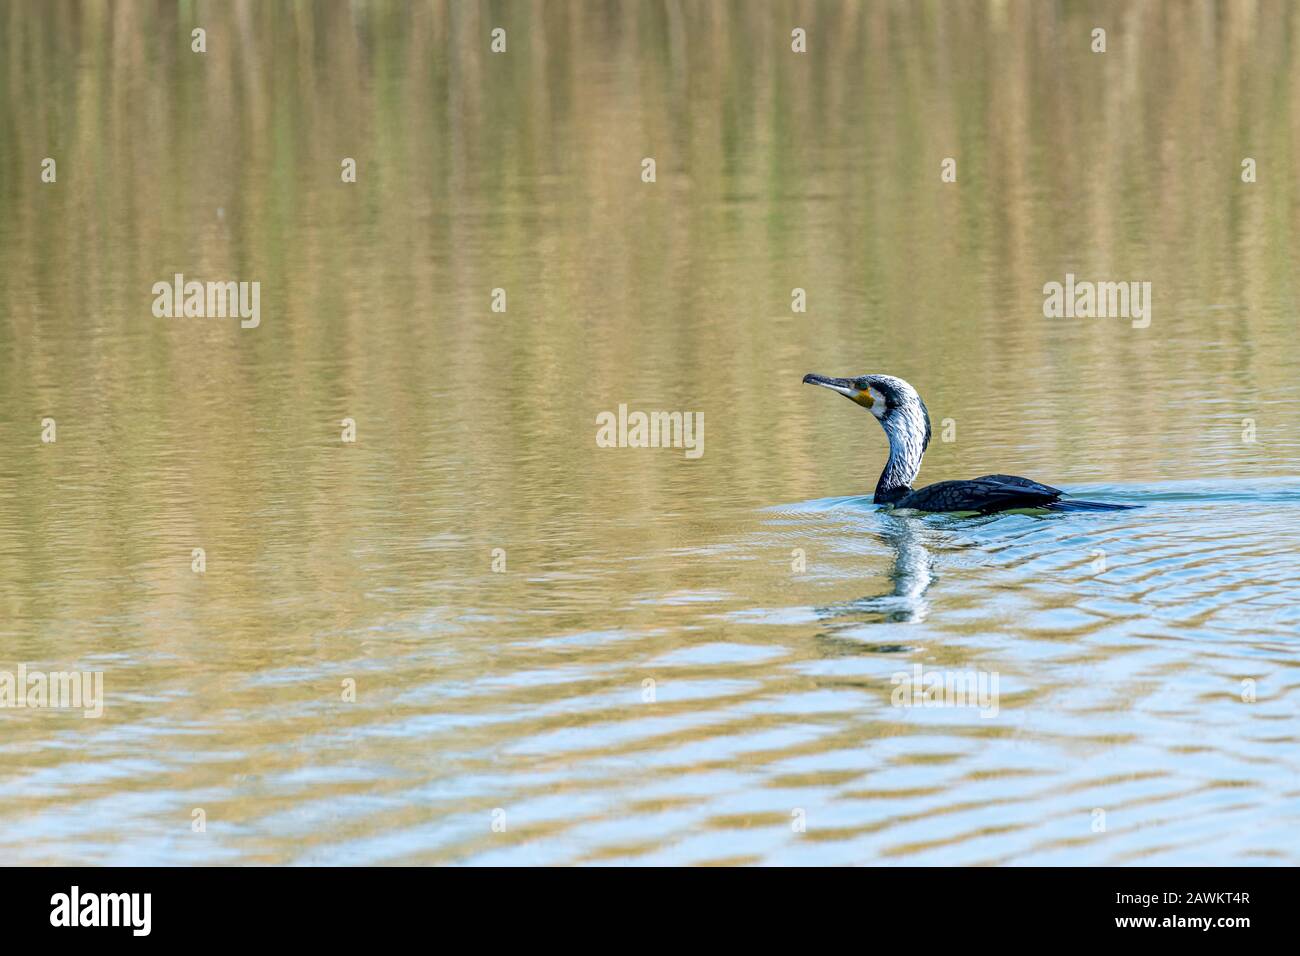 Oiseaux aquatiques ou oiseaux aquatiques nageant sur un lac Banque D'Images